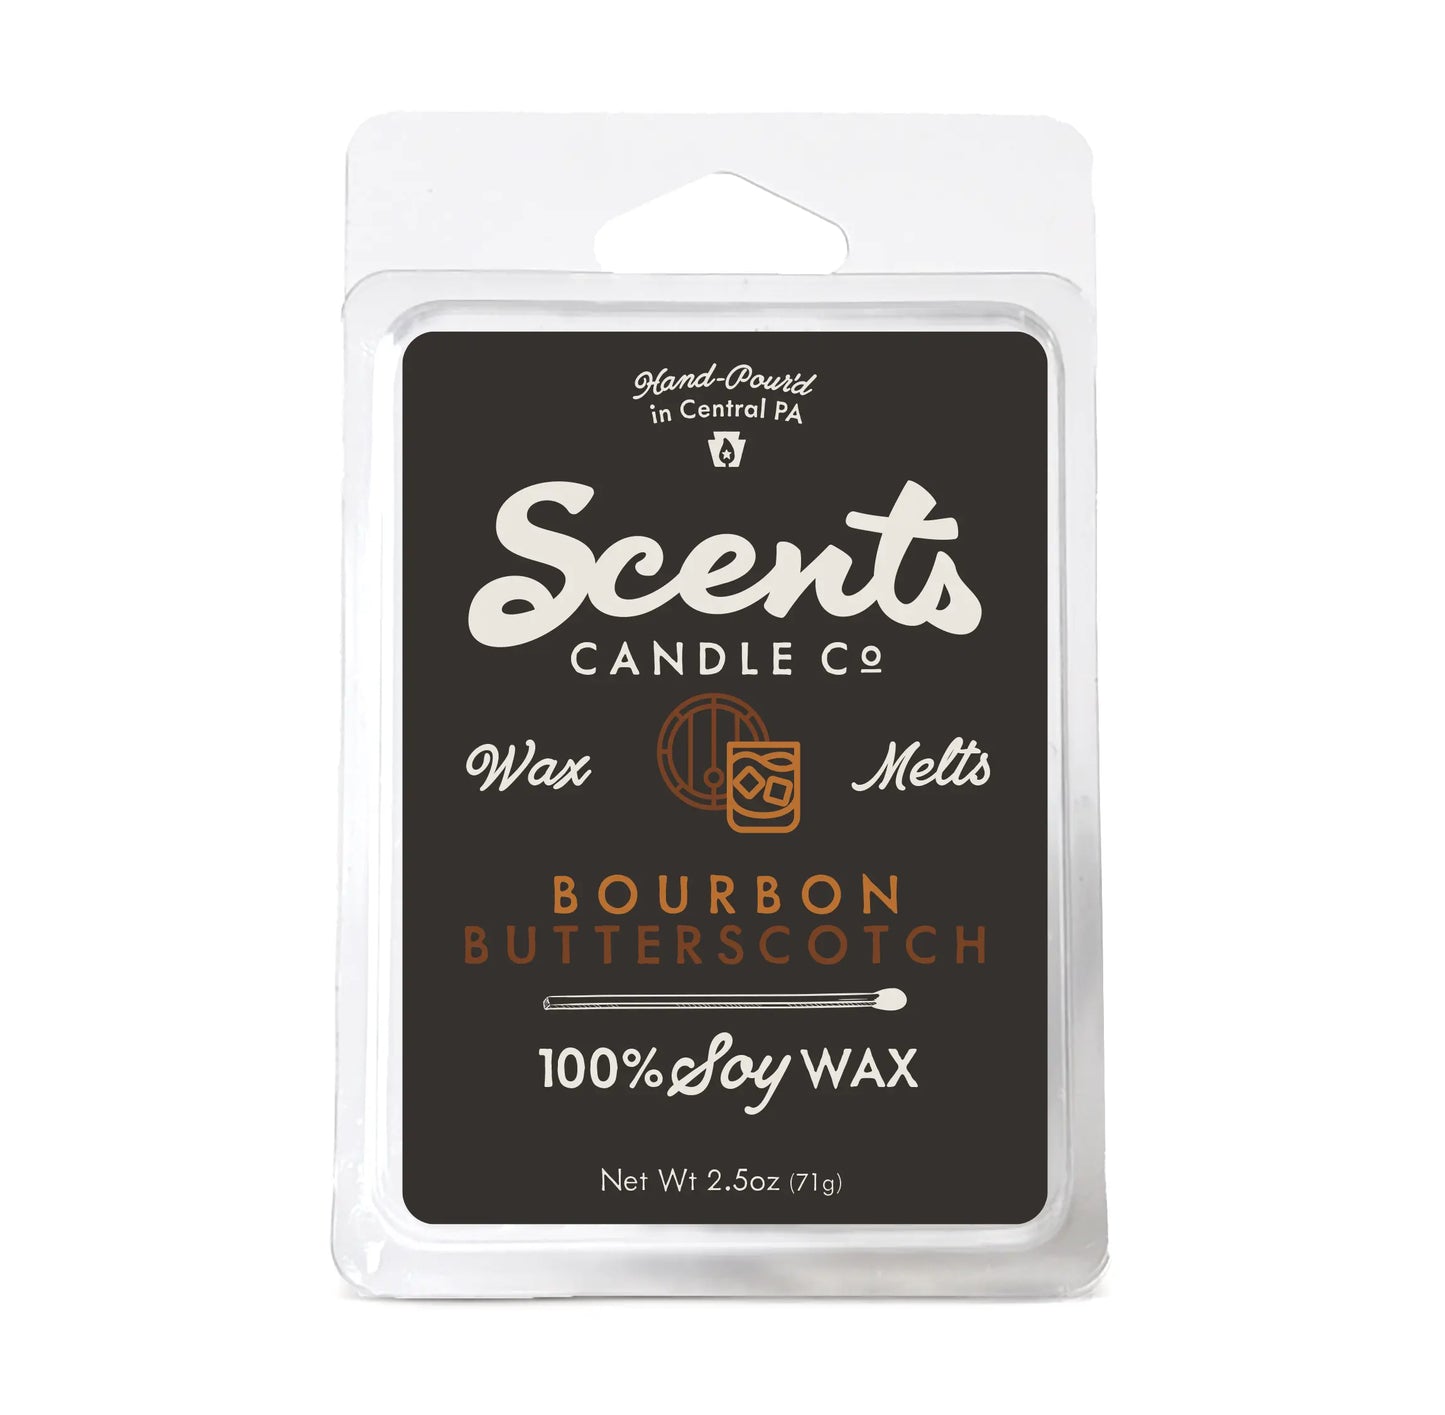 Scents Candle Co. Bourbon Butterscotch Wax Melt